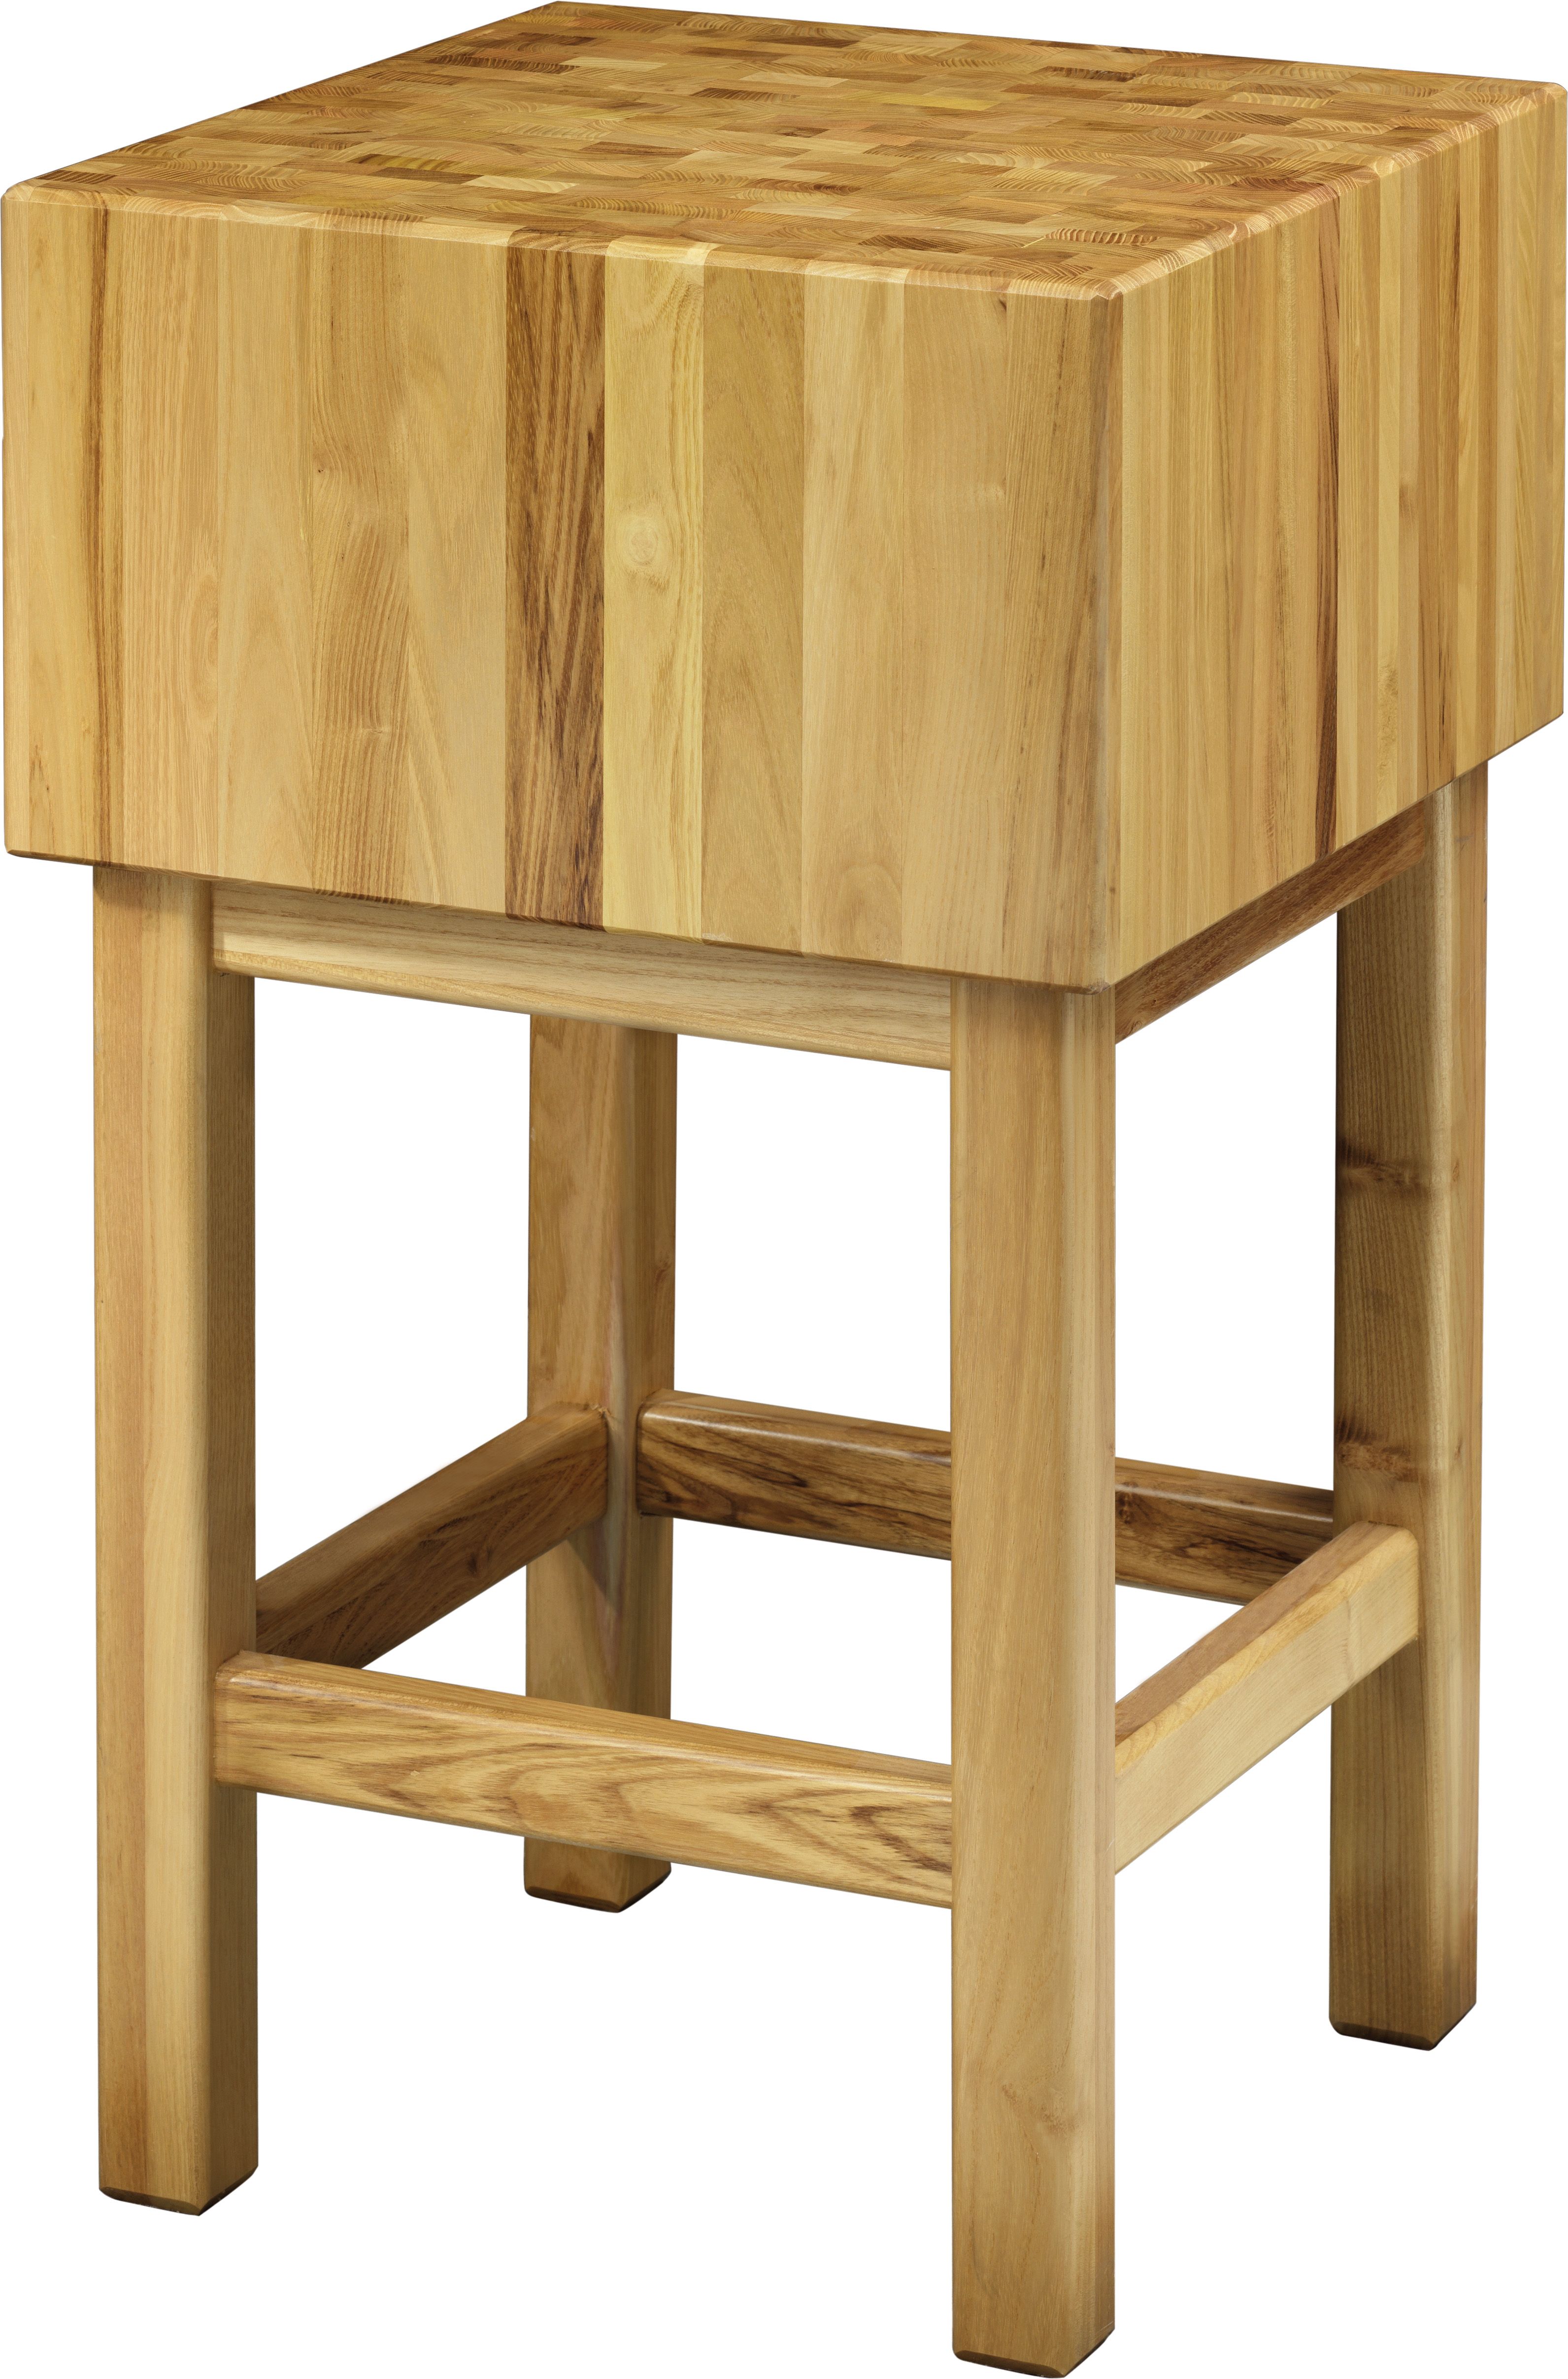 Hackblock – Holz – Stärke 25 cm – Untergestell Masse 50 x 50 x 90 cm